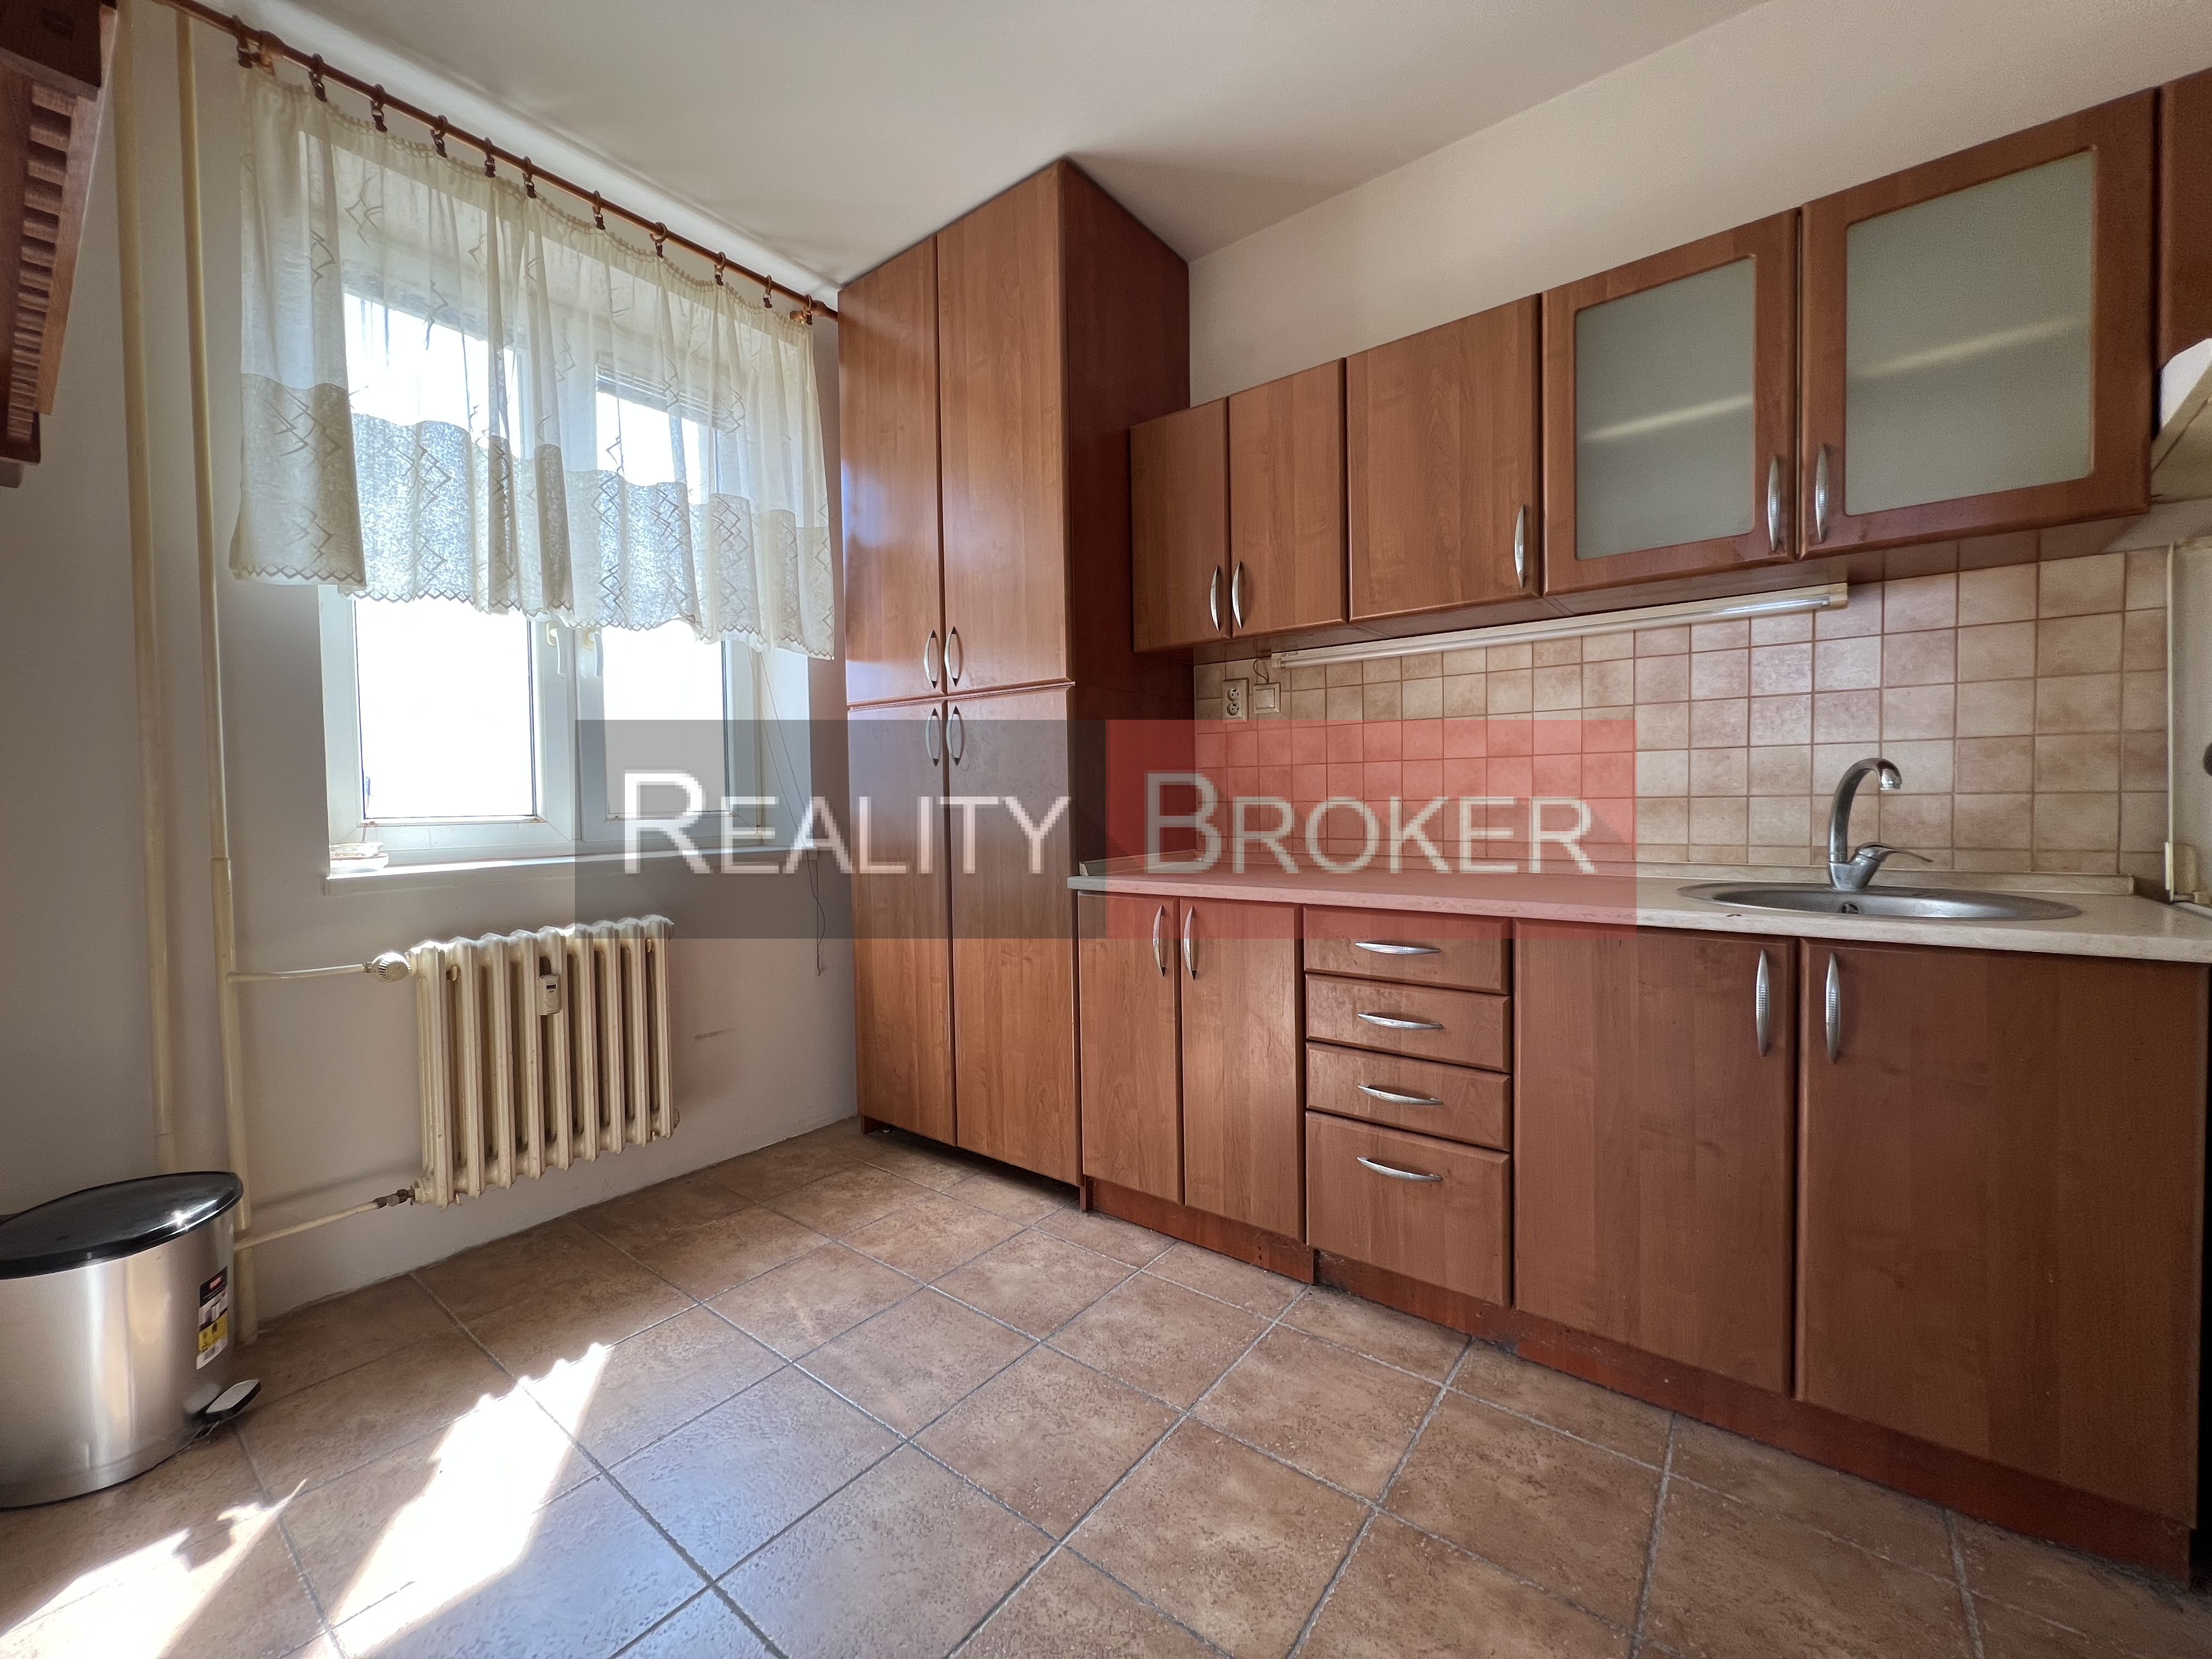 Výborná lokalita  – REALITY BROKER ponúka na predaj priestranný 2 izb. byt v Galante